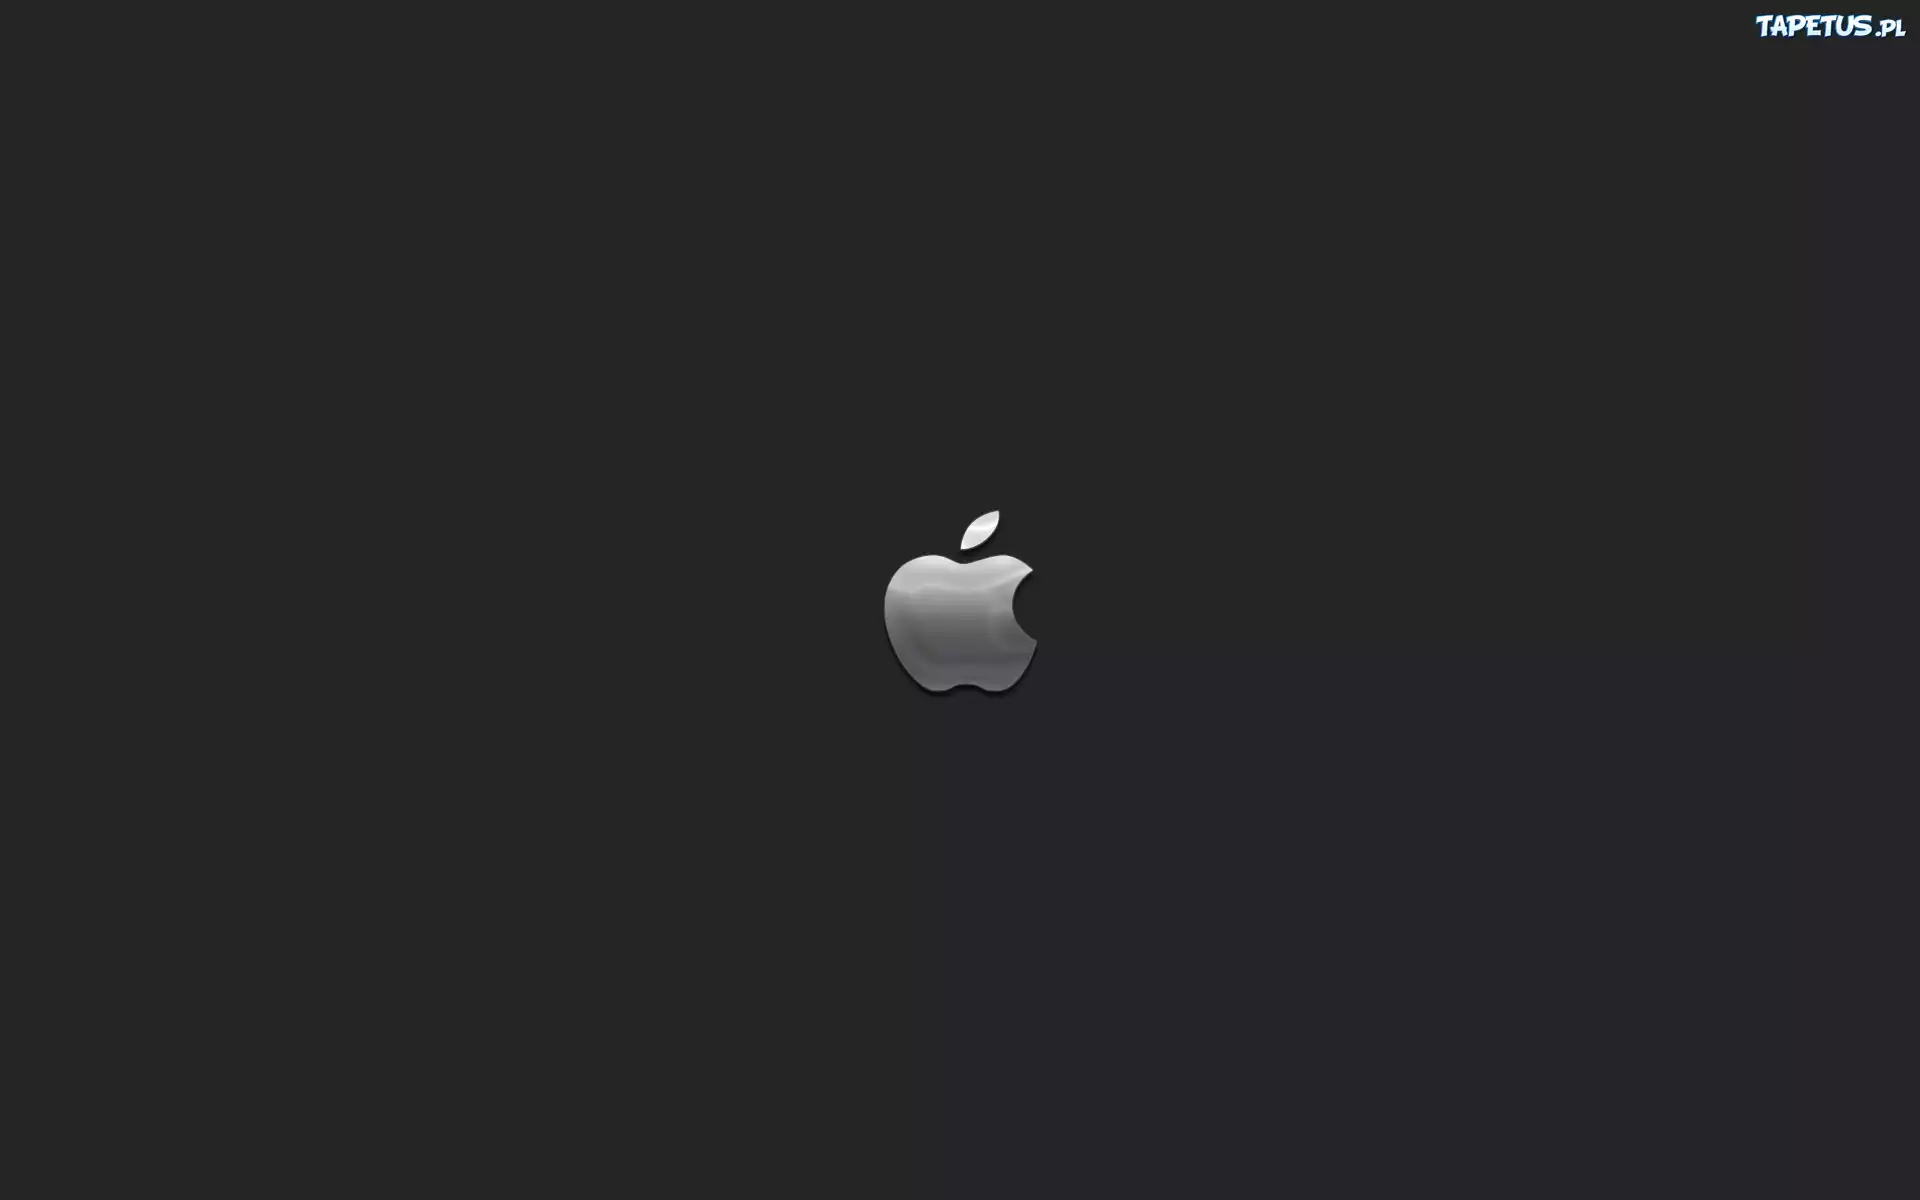 Обои айфон 15 черный. Фон Apple. Apple на черном фоне. Логотип Apple на черном фоне. Яблочко айфона.